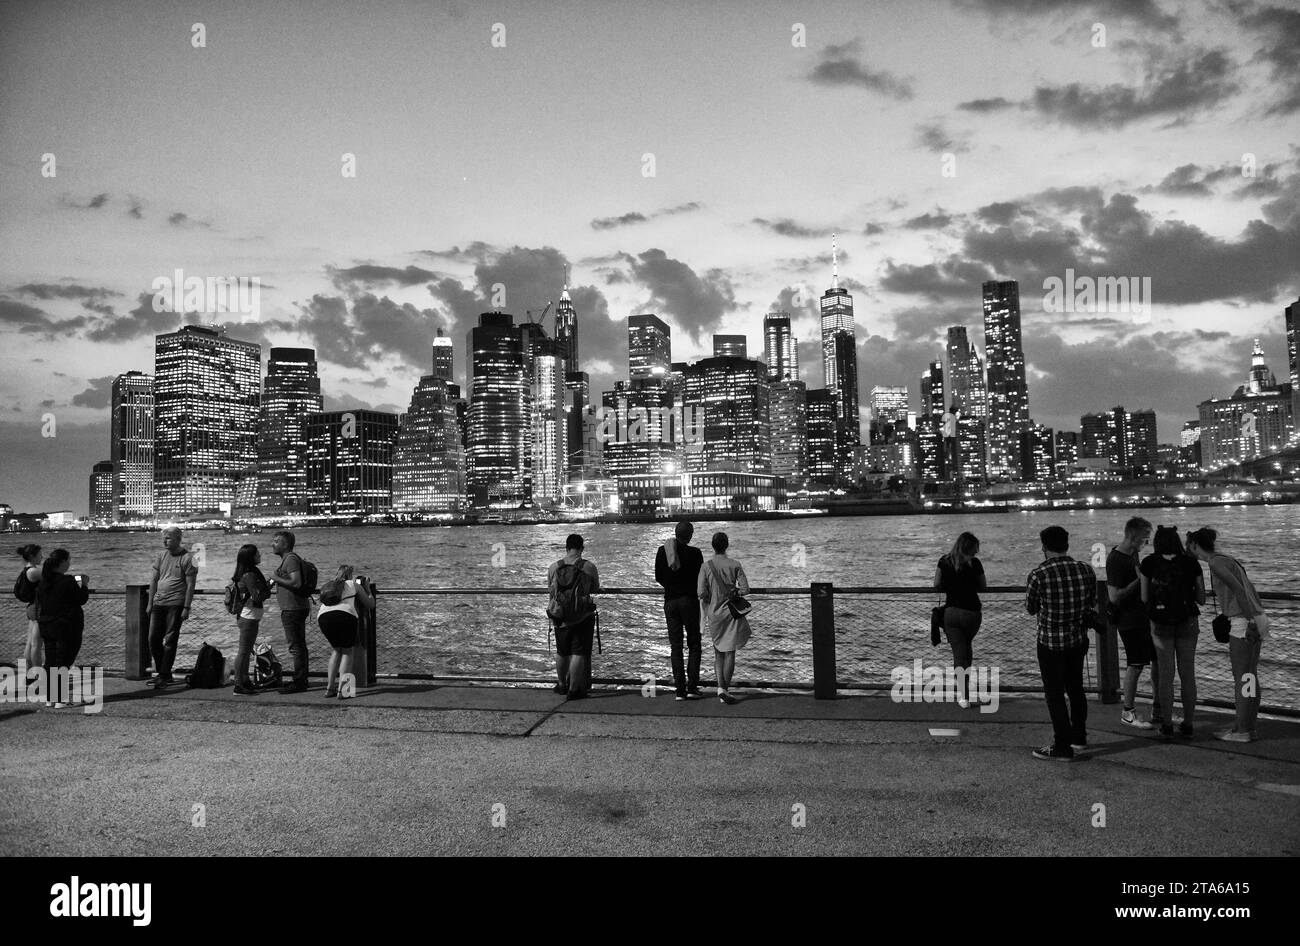 New York, États-Unis - 09 juin 2018 : les gens de Brooklyn Bridge Park profitent de la vue du soir sur le quartier financier du Lower Manhattan. Banque D'Images